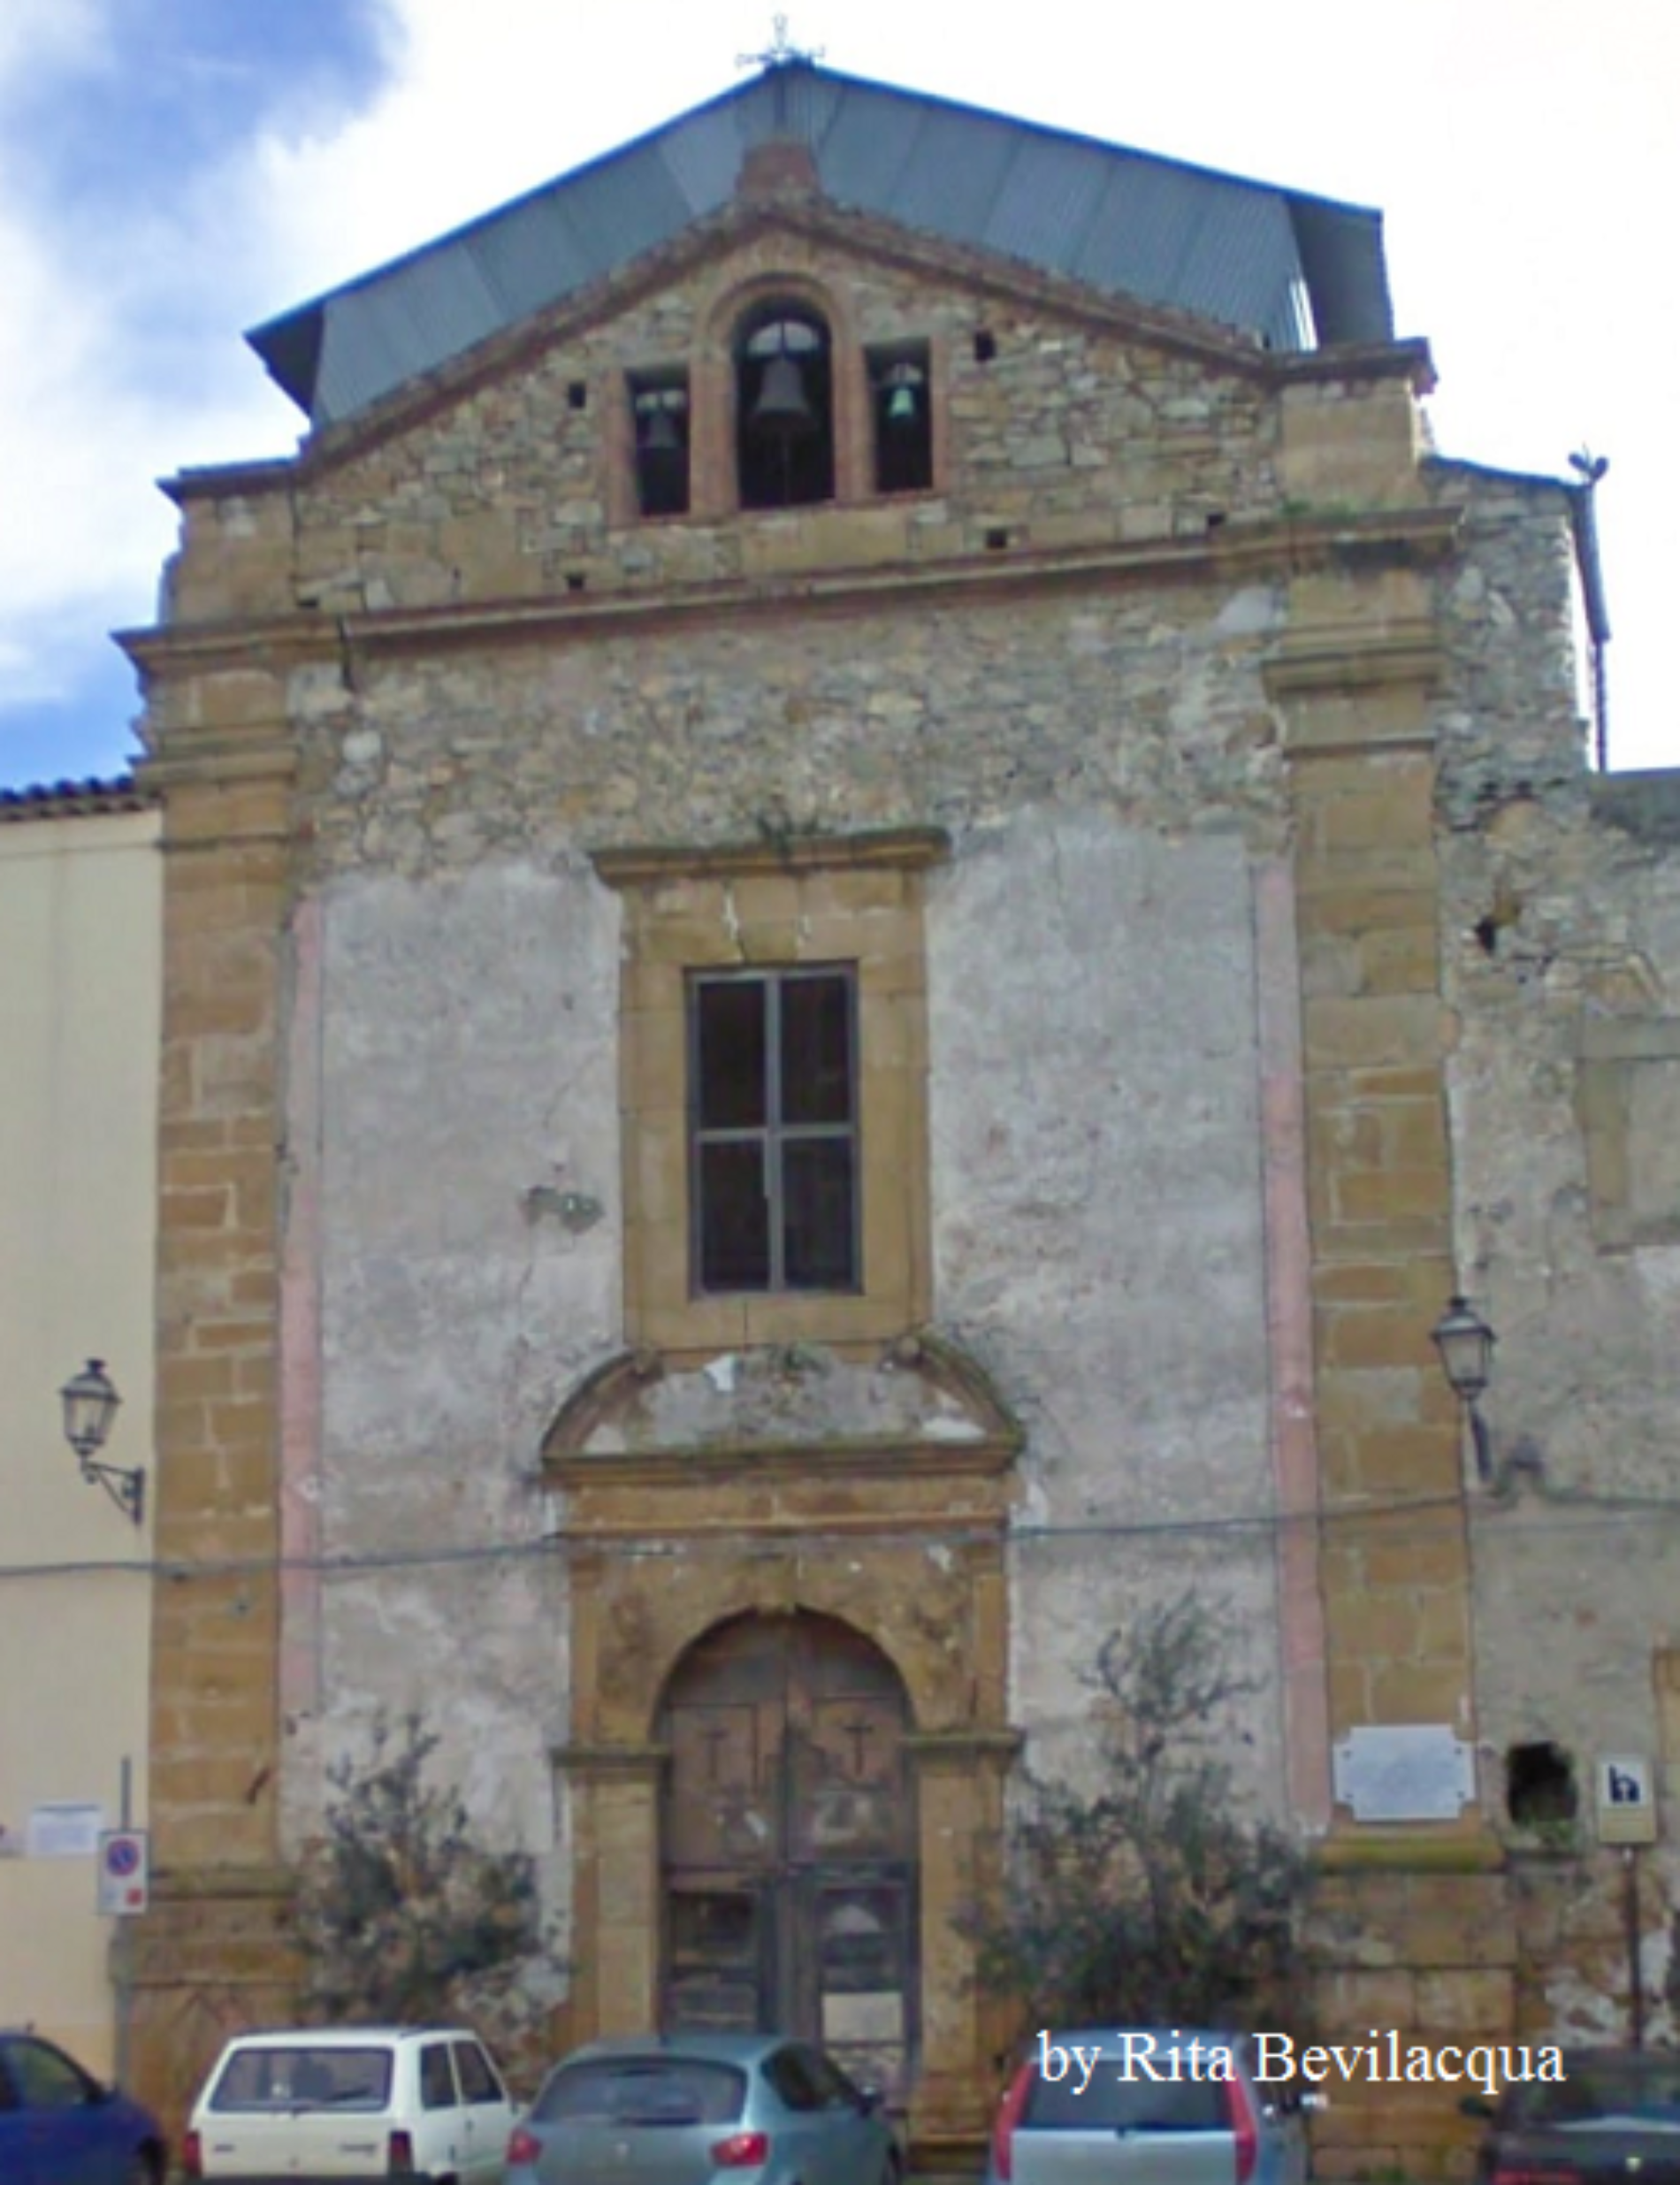 BARRAFRANCA. Revocato il finanziamento per il restauro della Chiesa di San Benedetto di piazza Fratelli Messina.